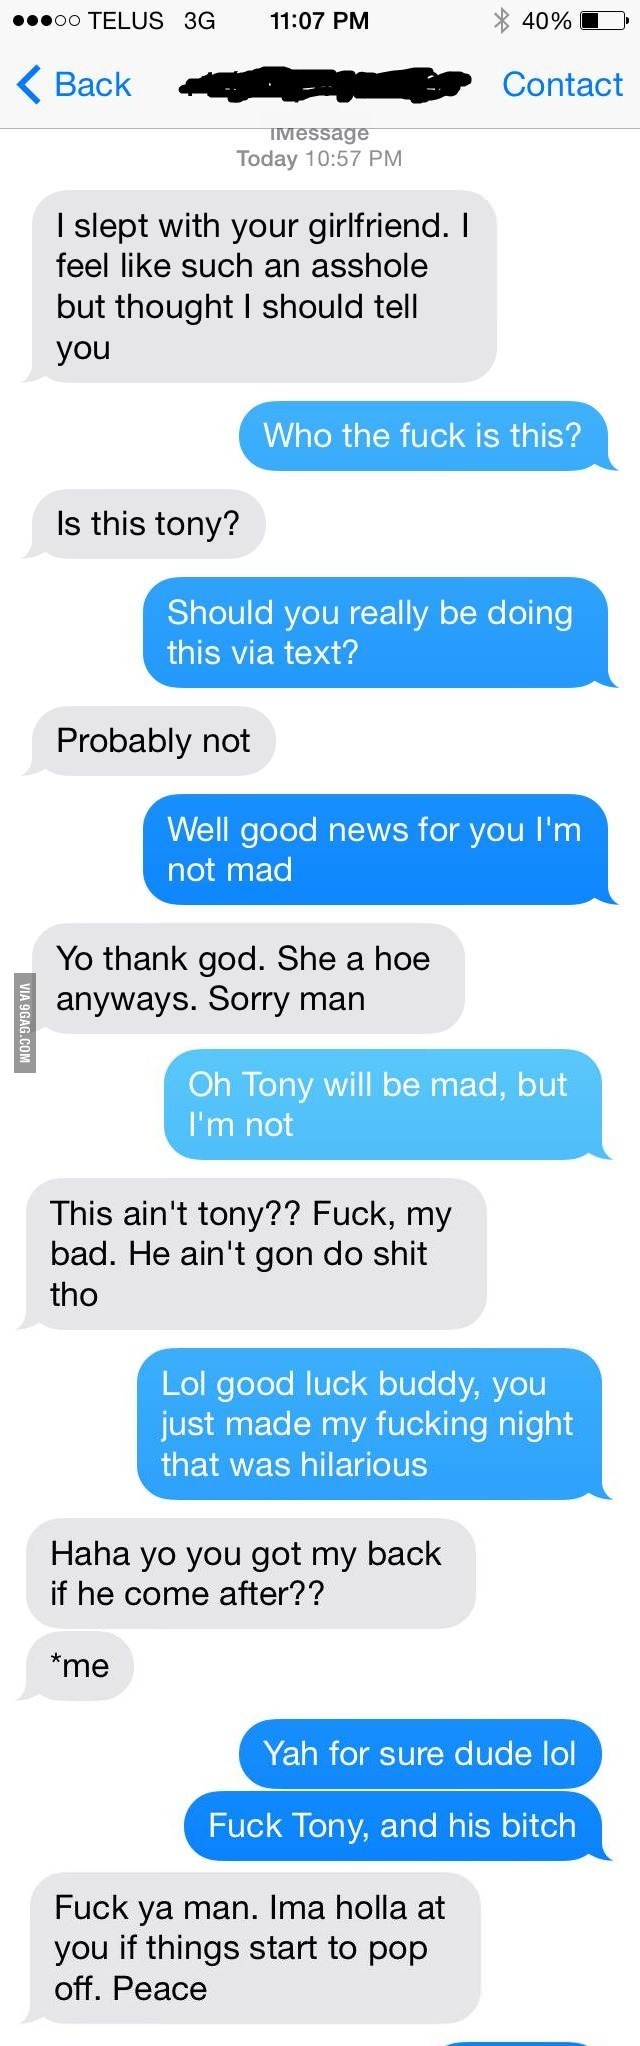 Poor Tony - meme